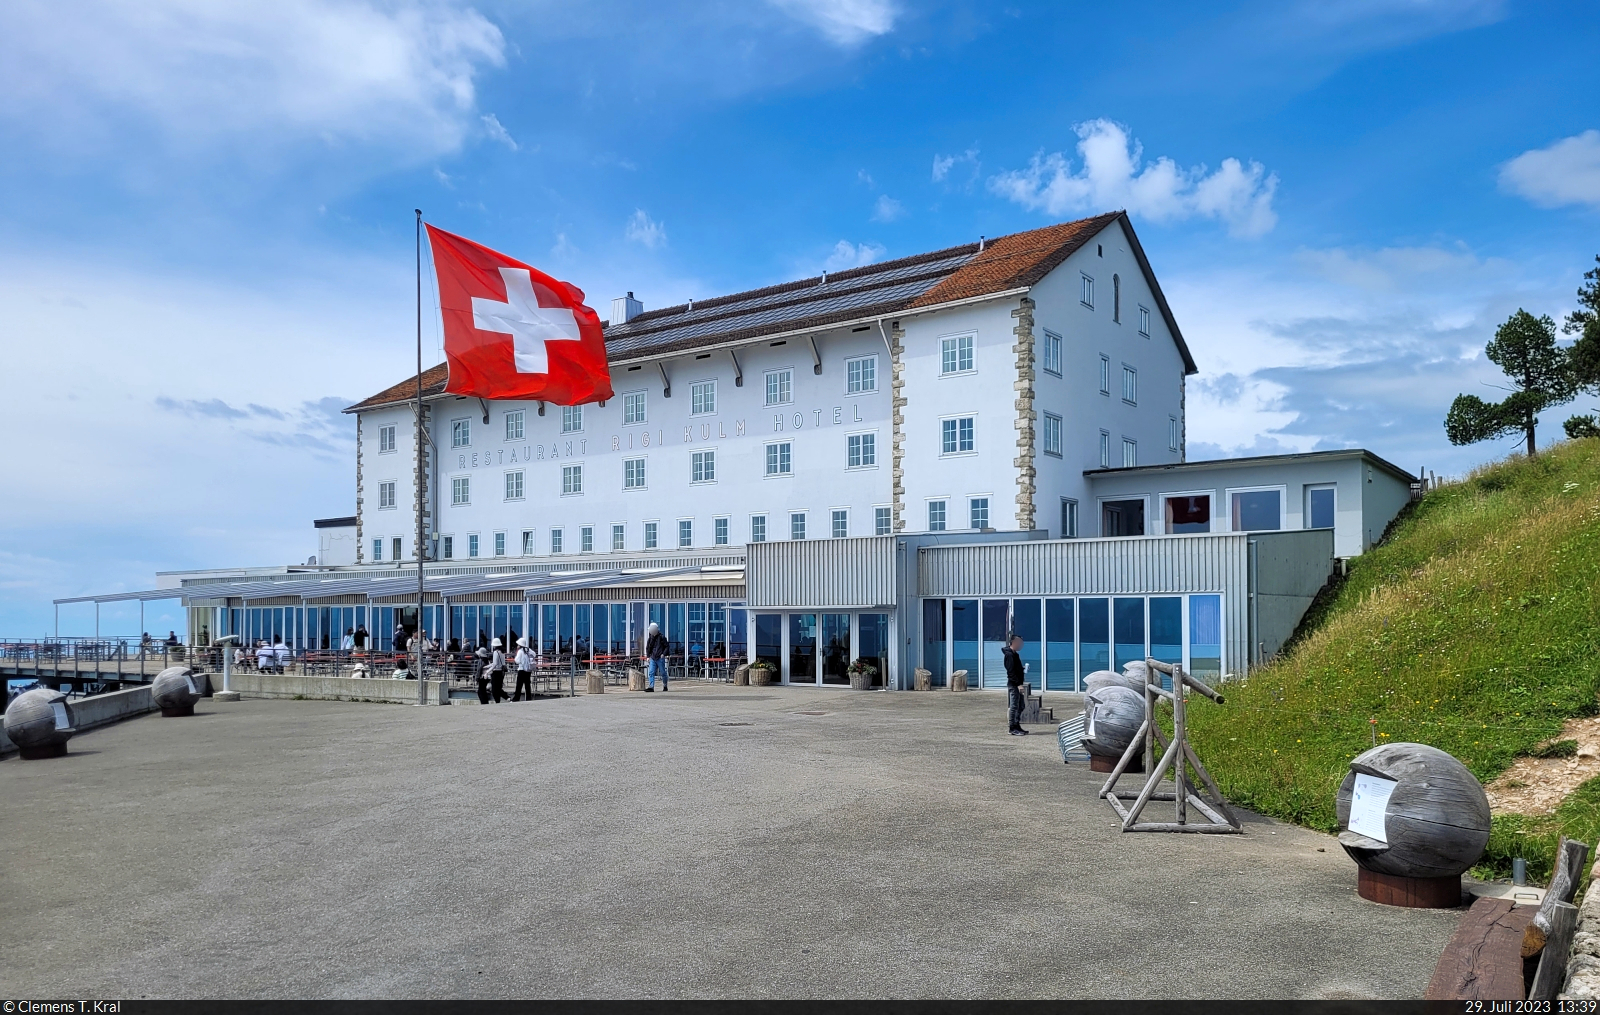 Hotel und Restaurant auf der Rigi Kulm, mit 1797 Metern . NN der hchste Gipfel des Bergmassivs Rigi in der Schweiz.

🕓 29.7.2023 | 13:39 Uhr